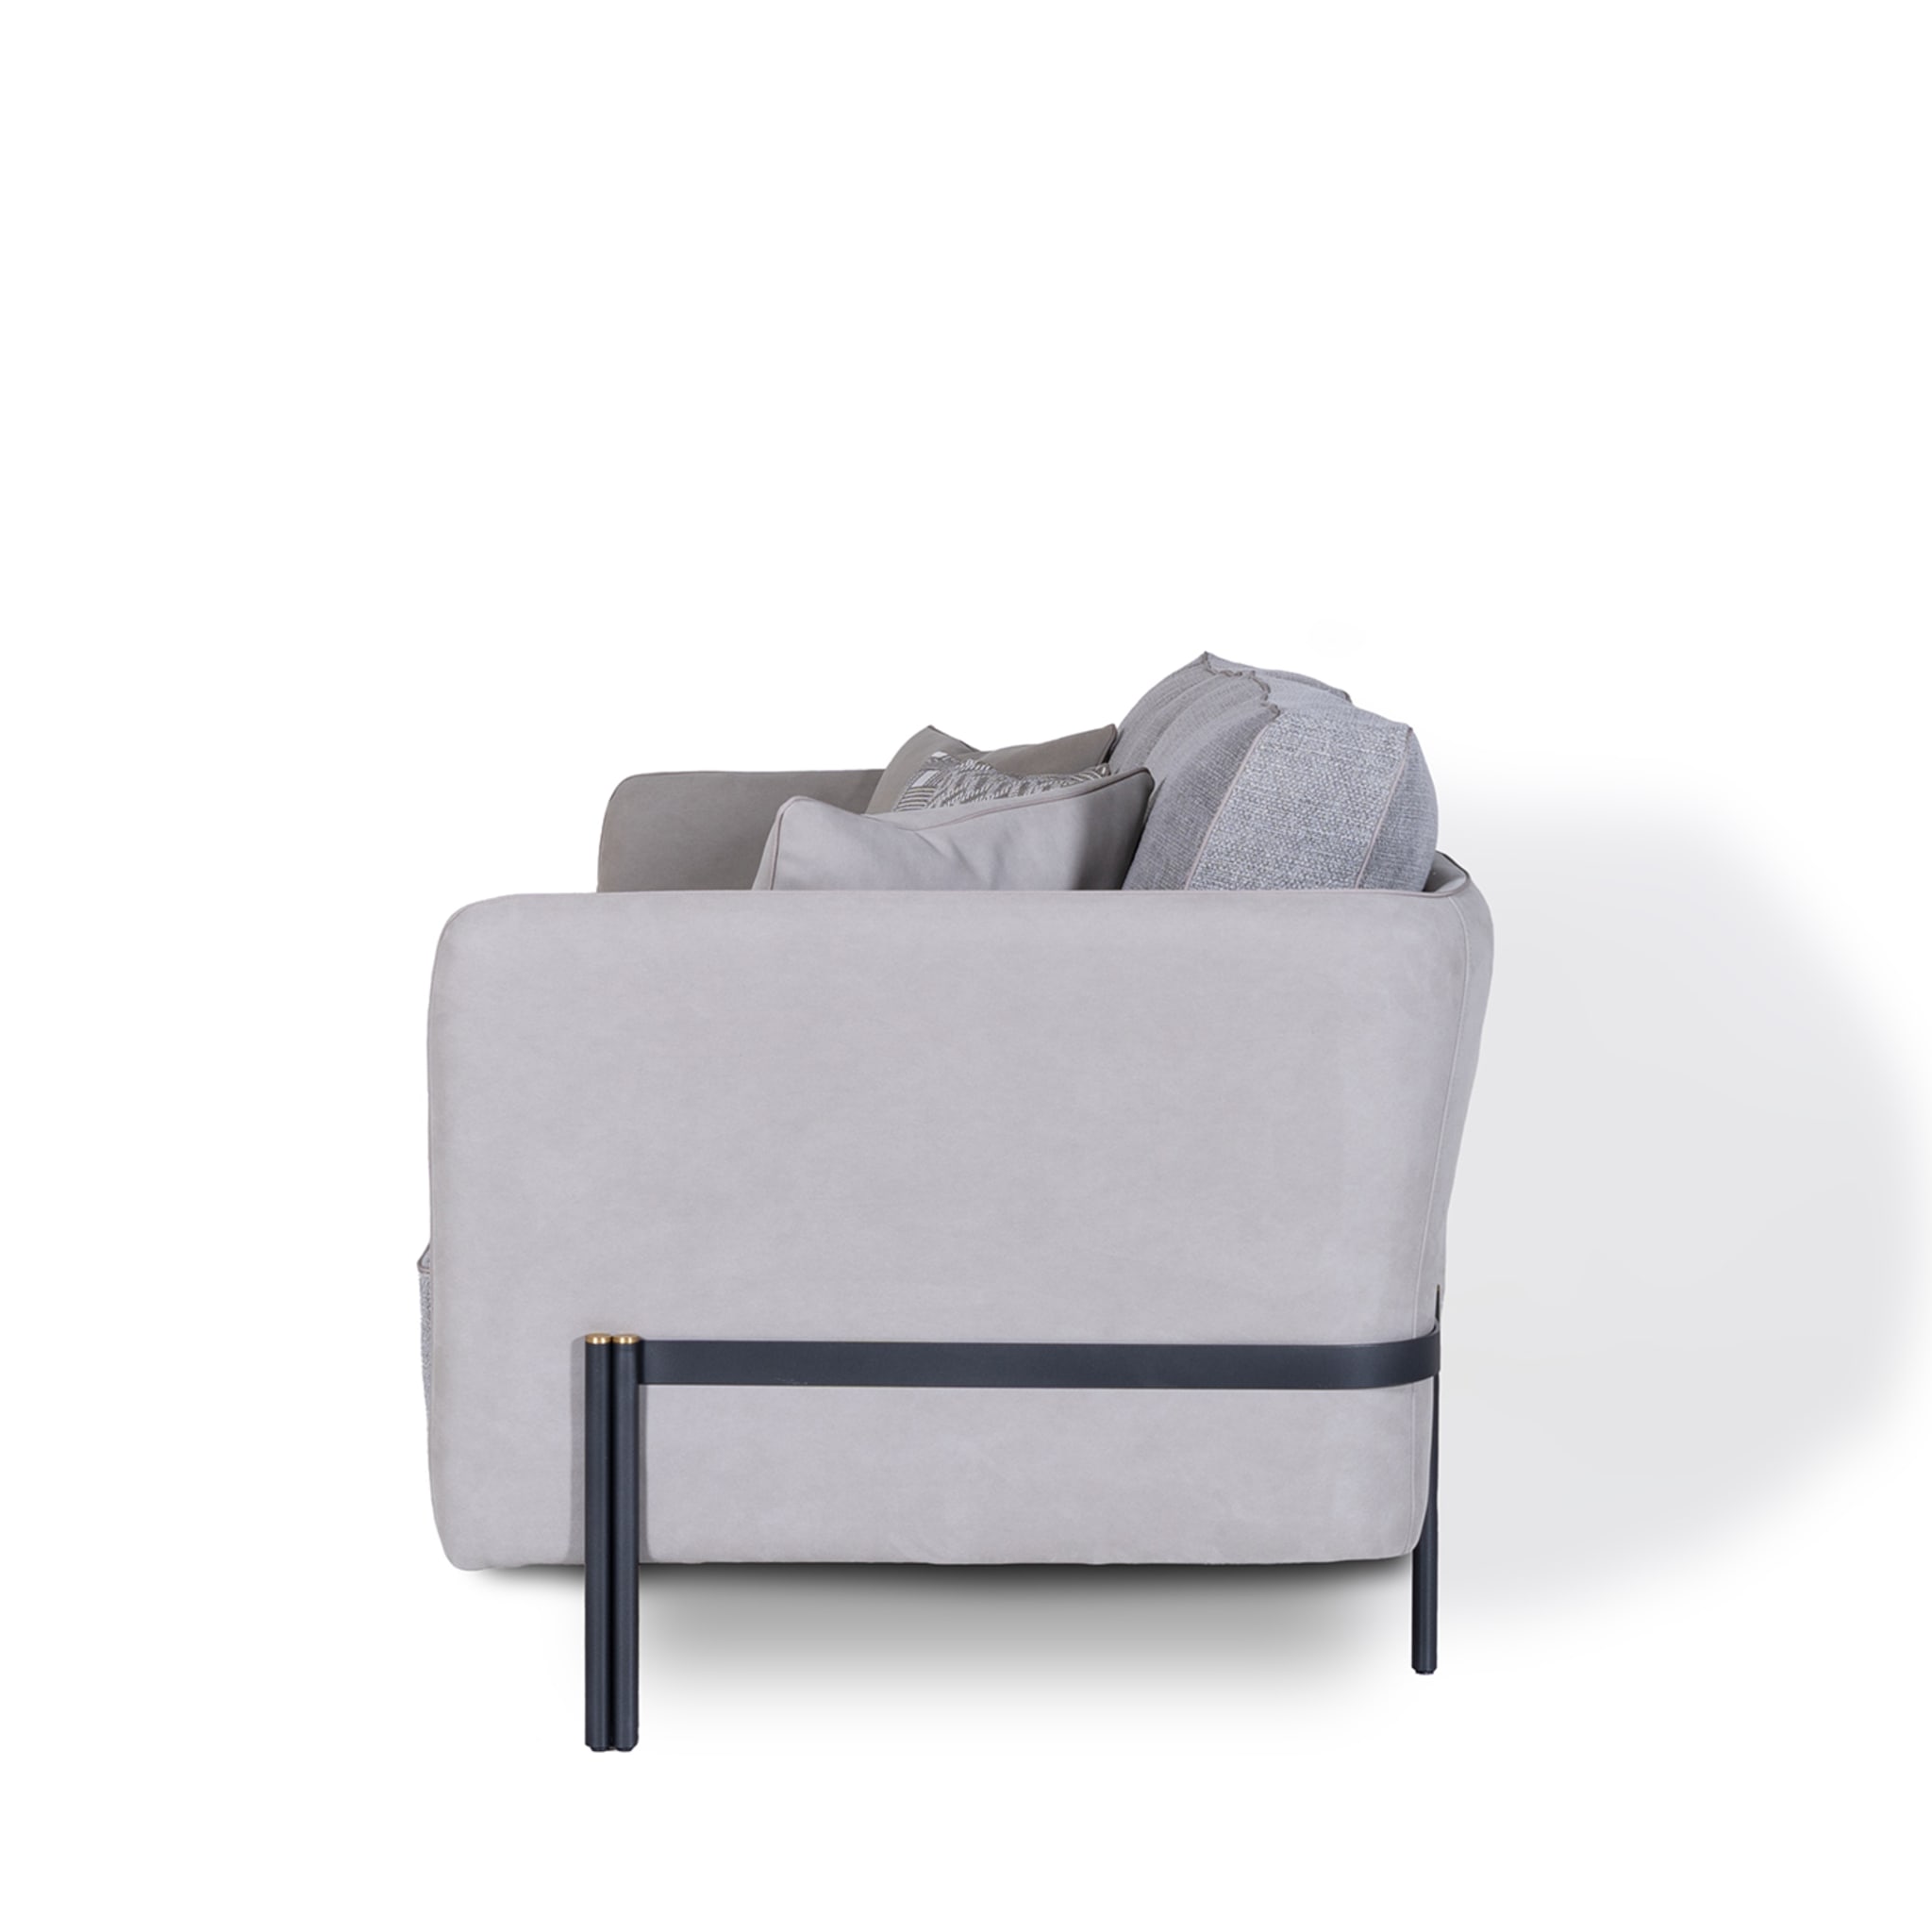 Universal Gray Sofa by Marco & Giulio Mantellassi  - Alternative view 1